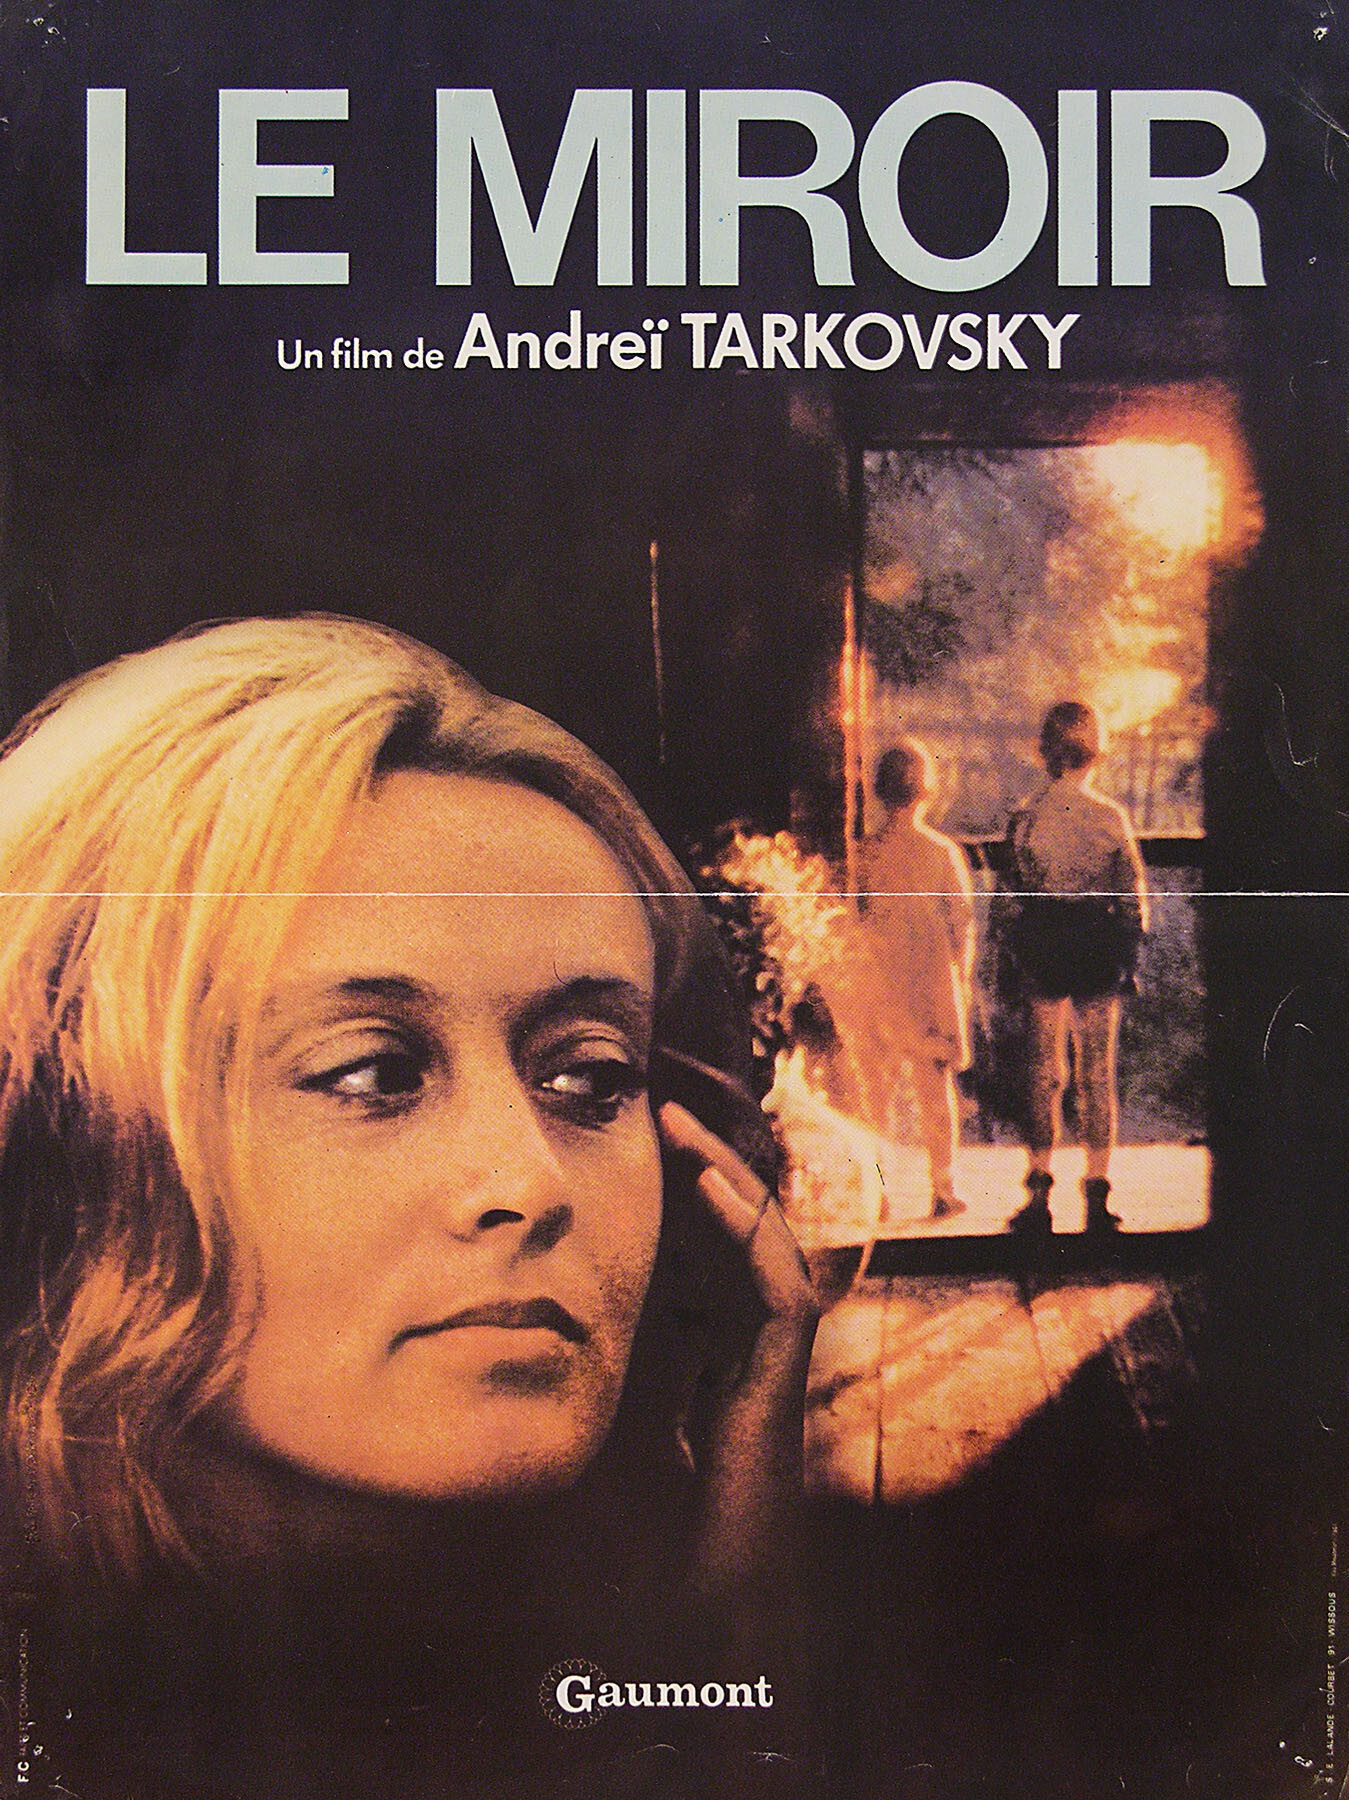 Зеркало (режиссёр Андрей Тарковский, 1975), французский постер к фильму, 1975 год